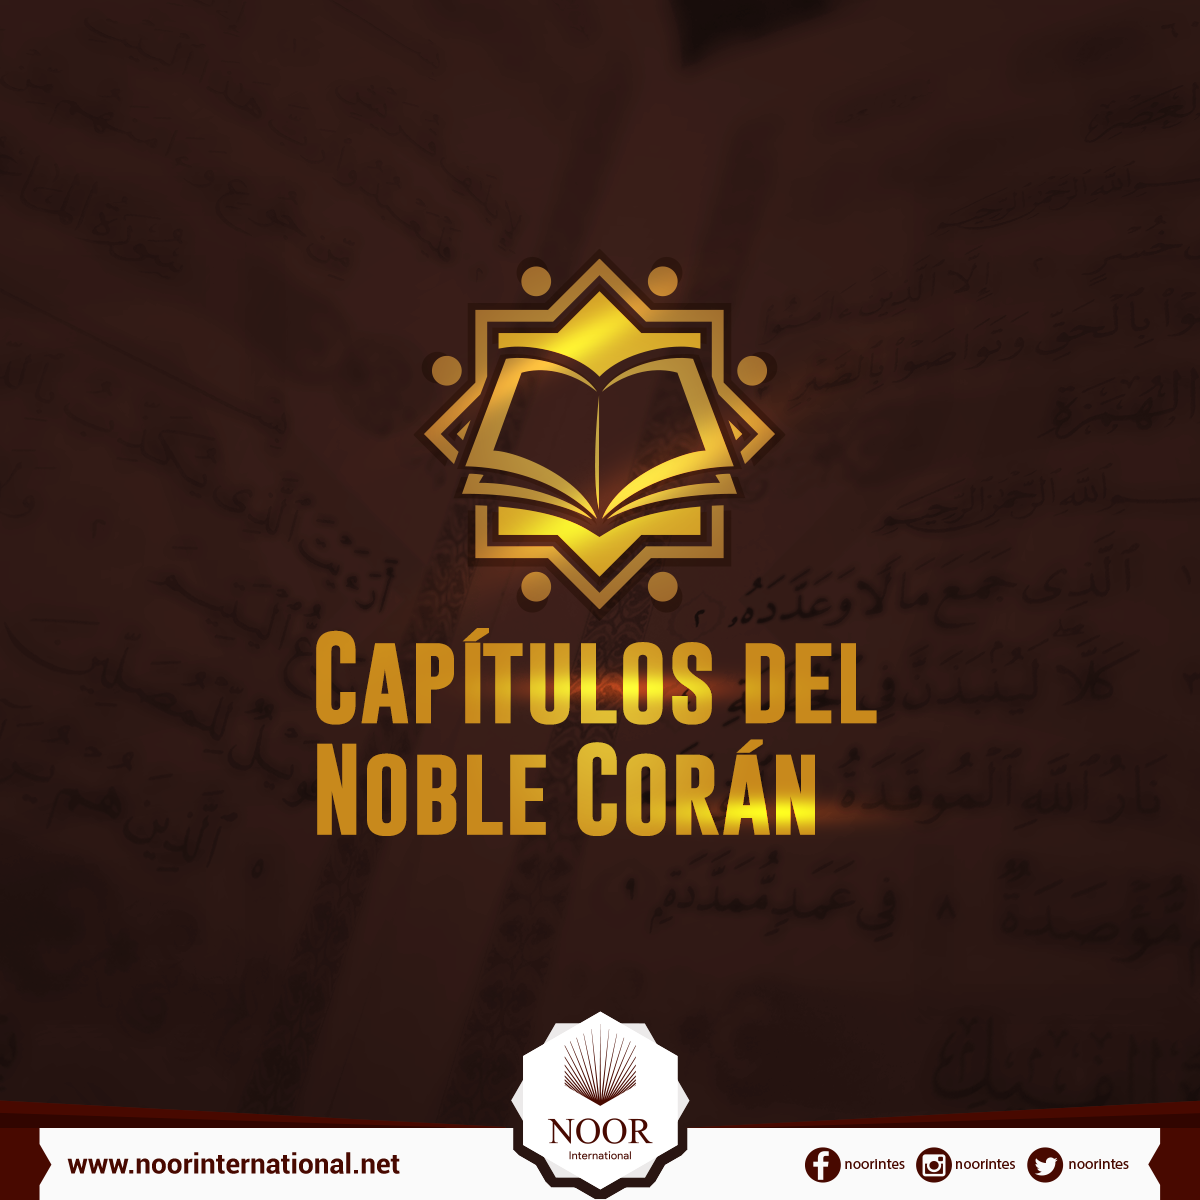 Capítulos del Noble Corán